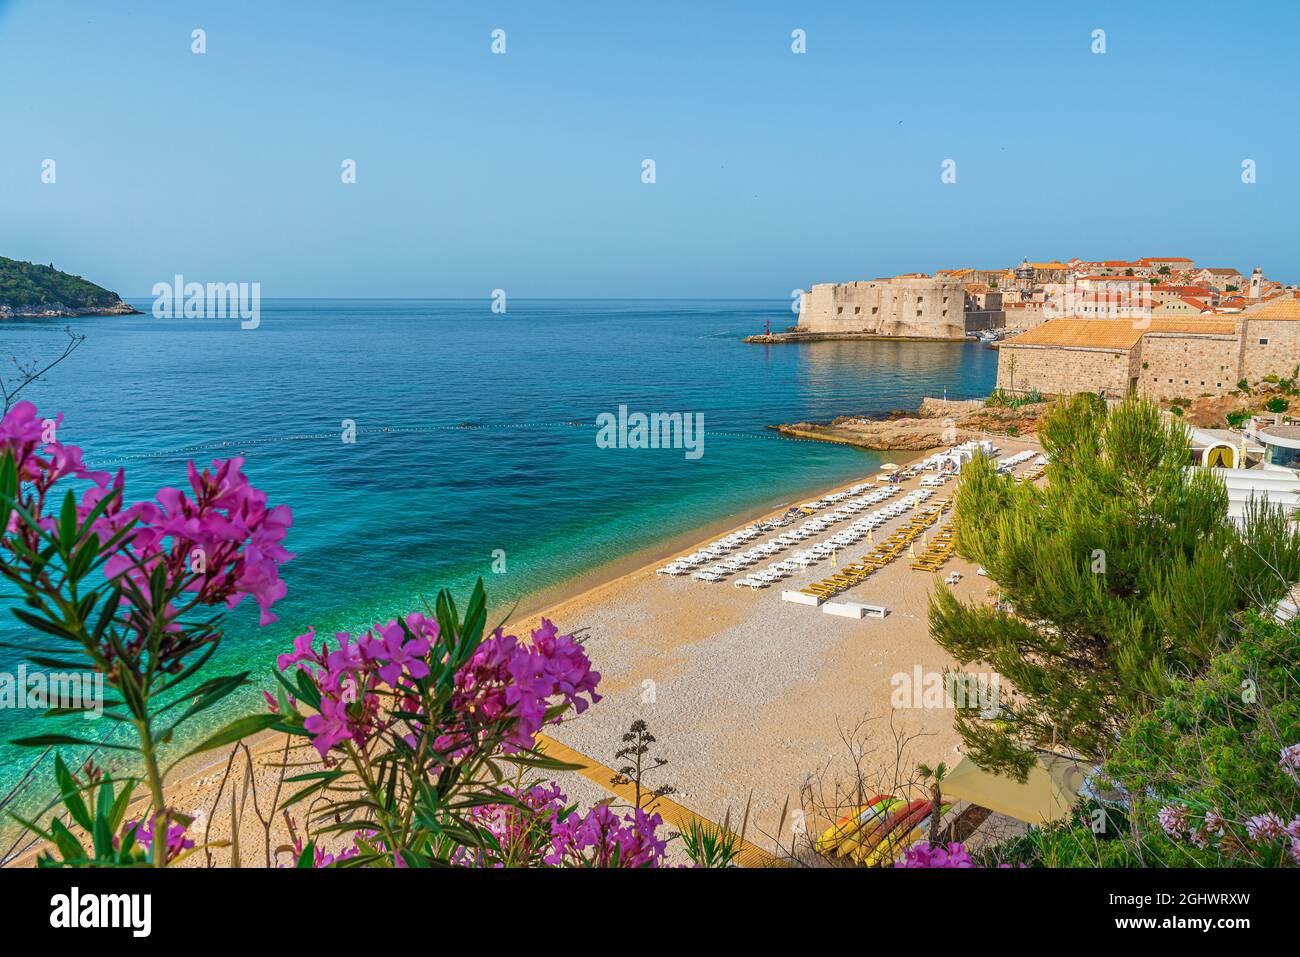 Città vecchia di Dubrovnik con spiaggia sabbiosa di Banje e fiori sul mare Adriatico in Croazia, Europa. Destinazione estiva Foto Stock